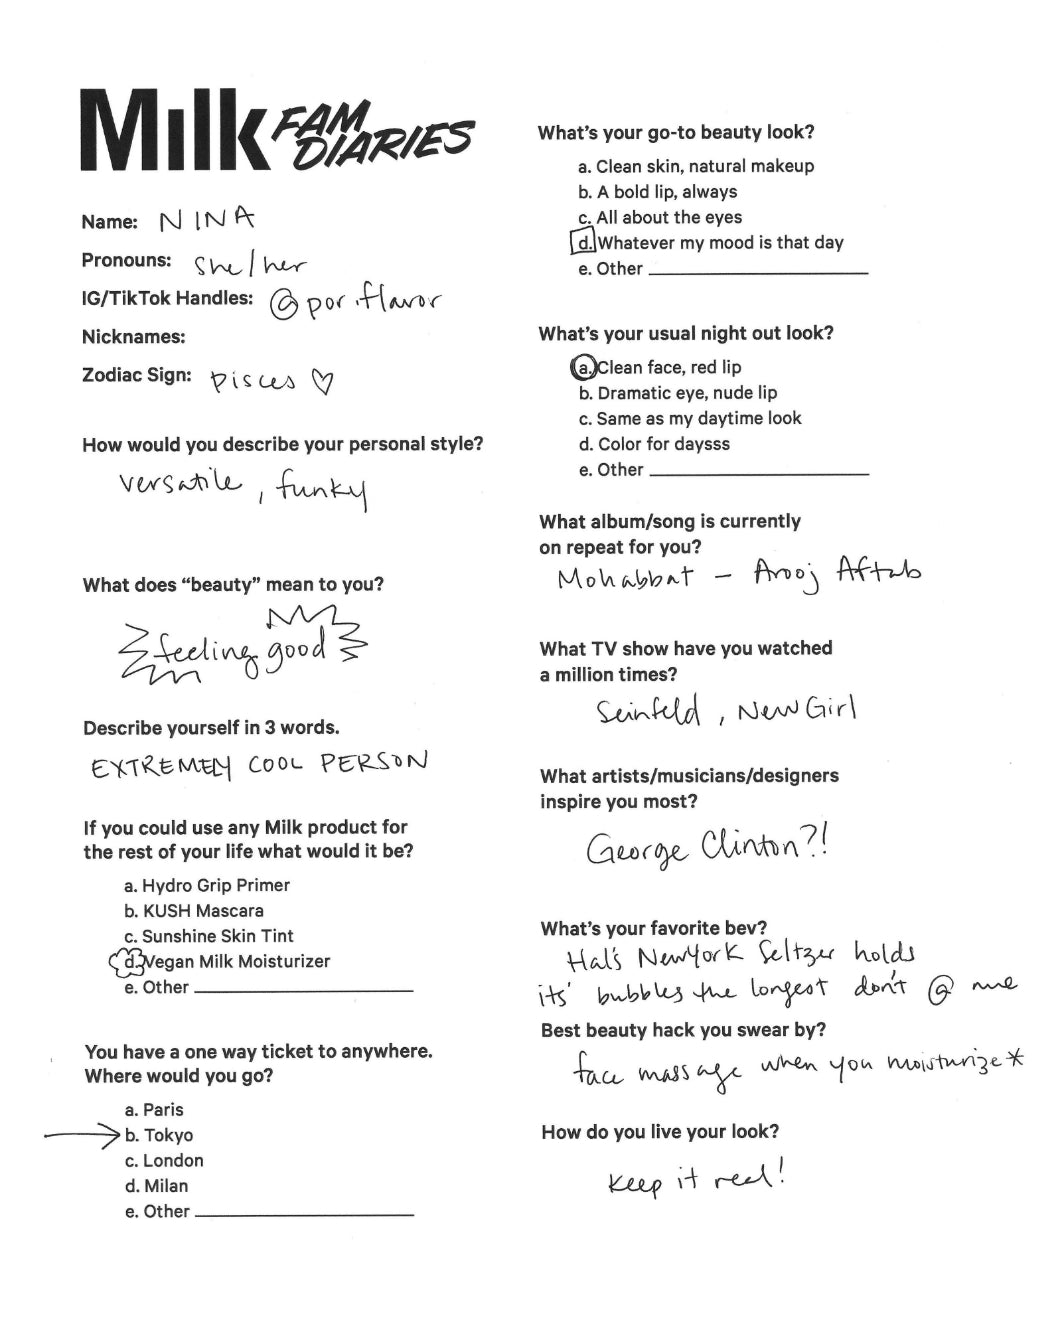 Handwritten Q+A by Milk Makeup model Nina